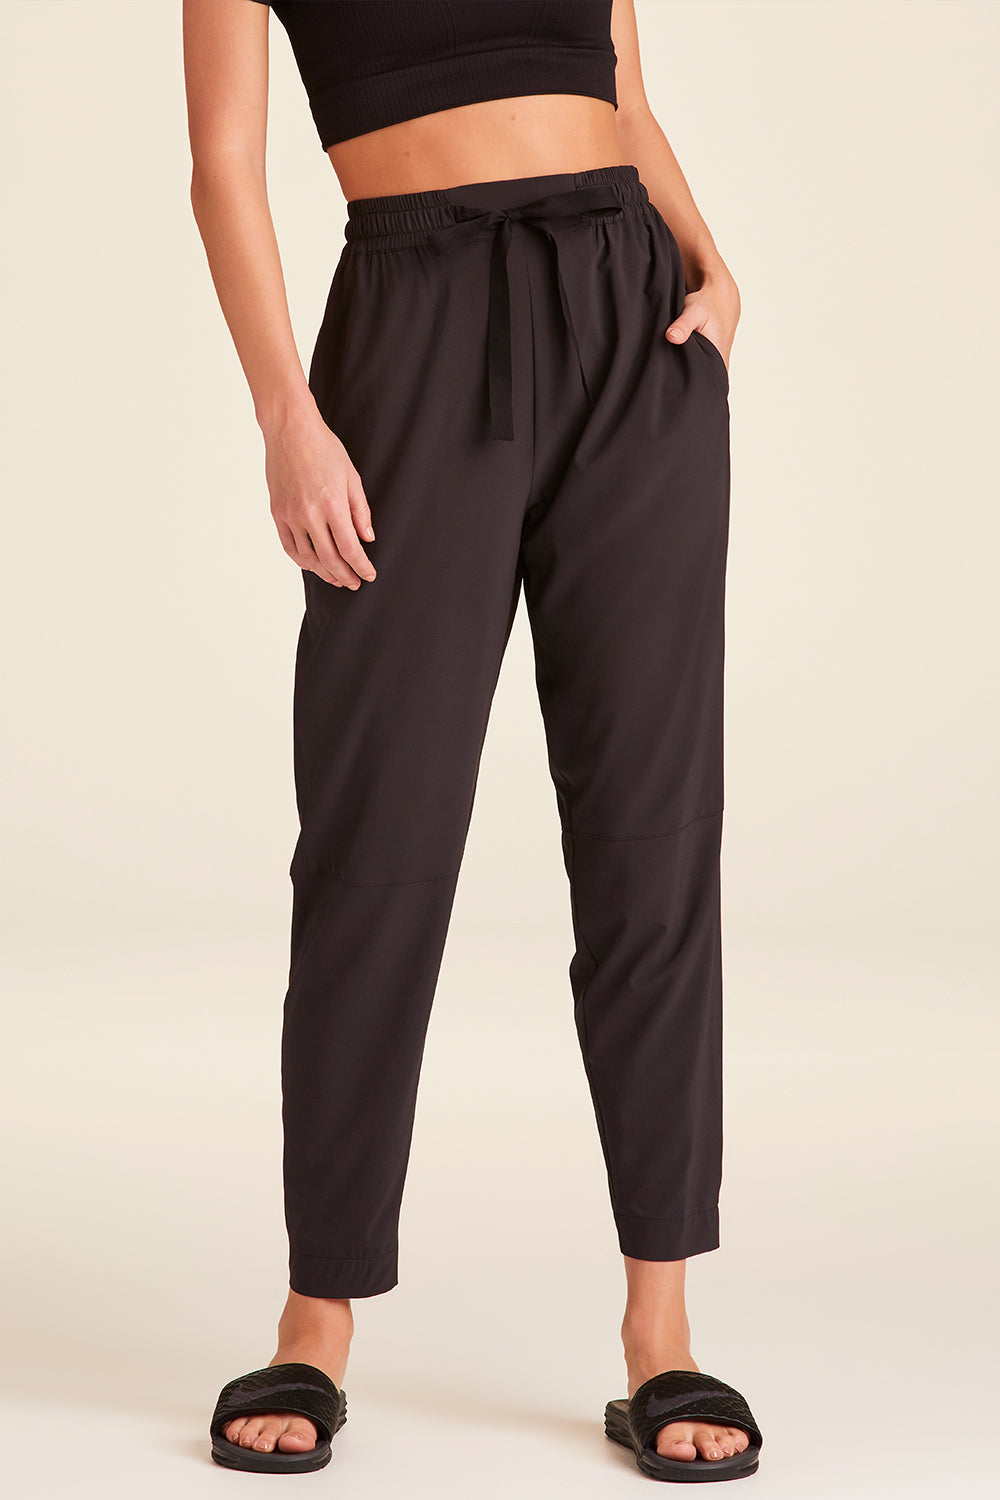 Shop Women's Dark Pants